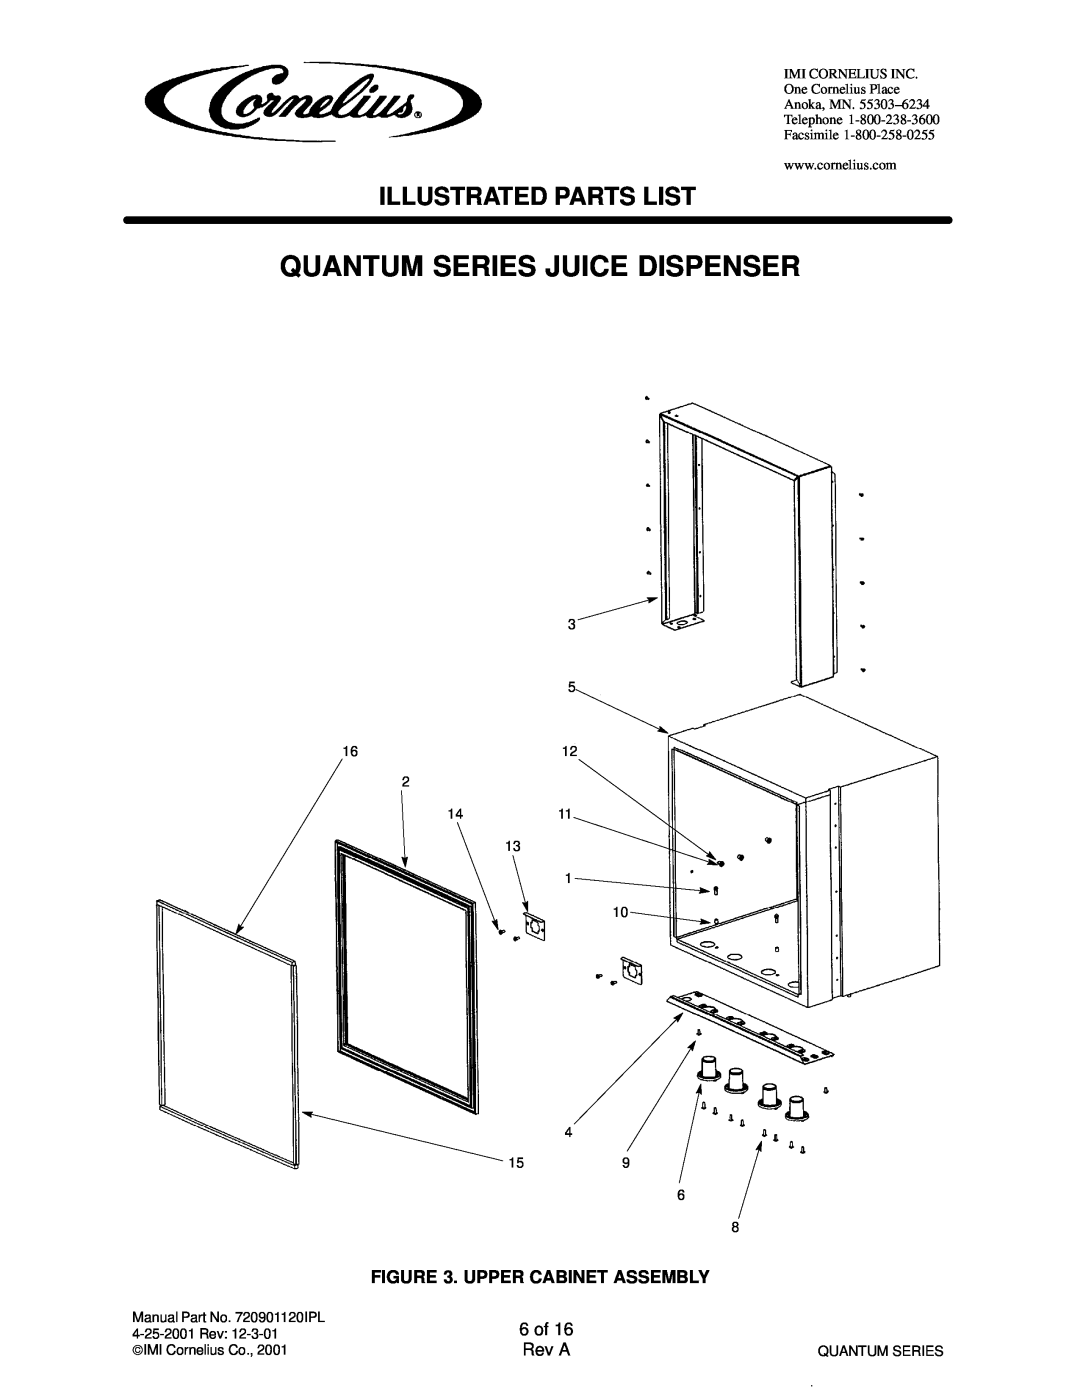 Cornelius QUANTUM SERIES service manual Quantum Series Juice Dispenser, Illustrated Parts List, Upper Cabinet Assembly 